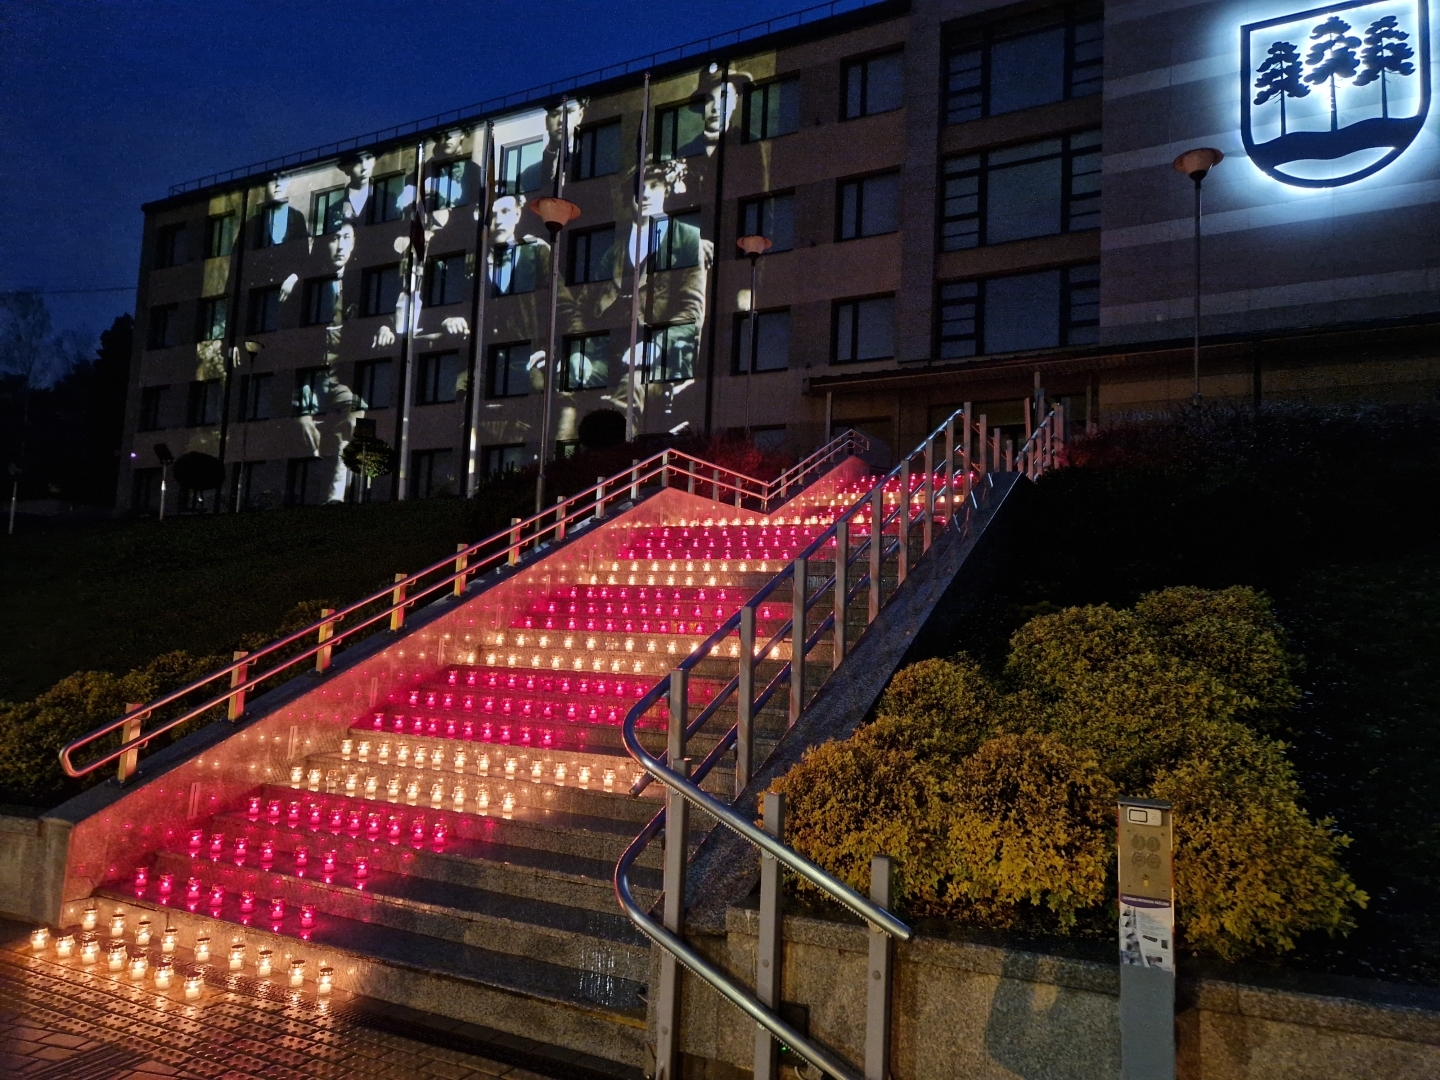 Sarkanbaltsarkanas svecītes uz pašvaldības ēkas kāpnēm un filmas demonstrācija uz ēkas sienas